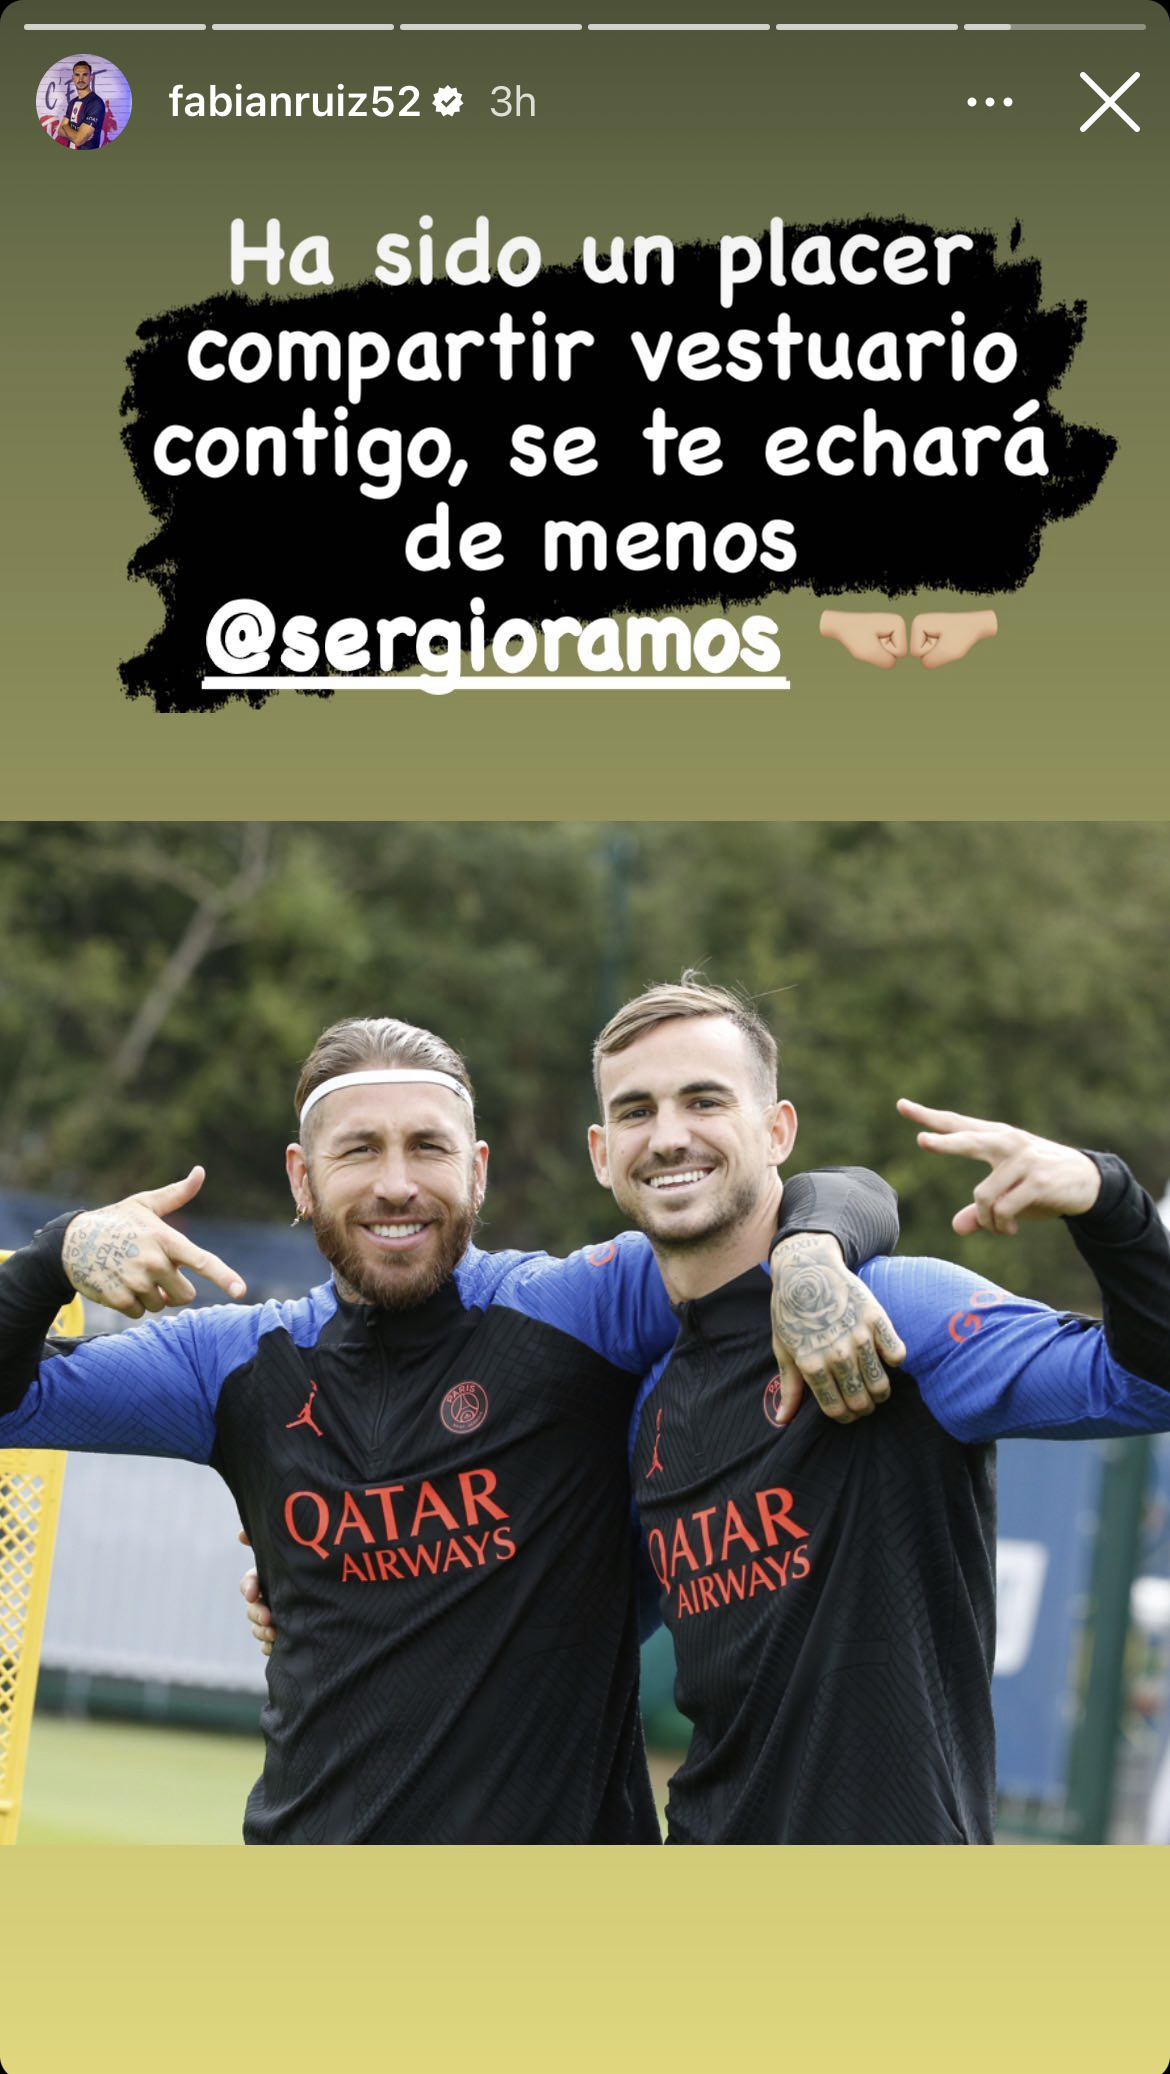 Las estrellas del PSG envían conmovedores mensajes de despedida a Lionel Messi, Sergio Ramos (Foto)